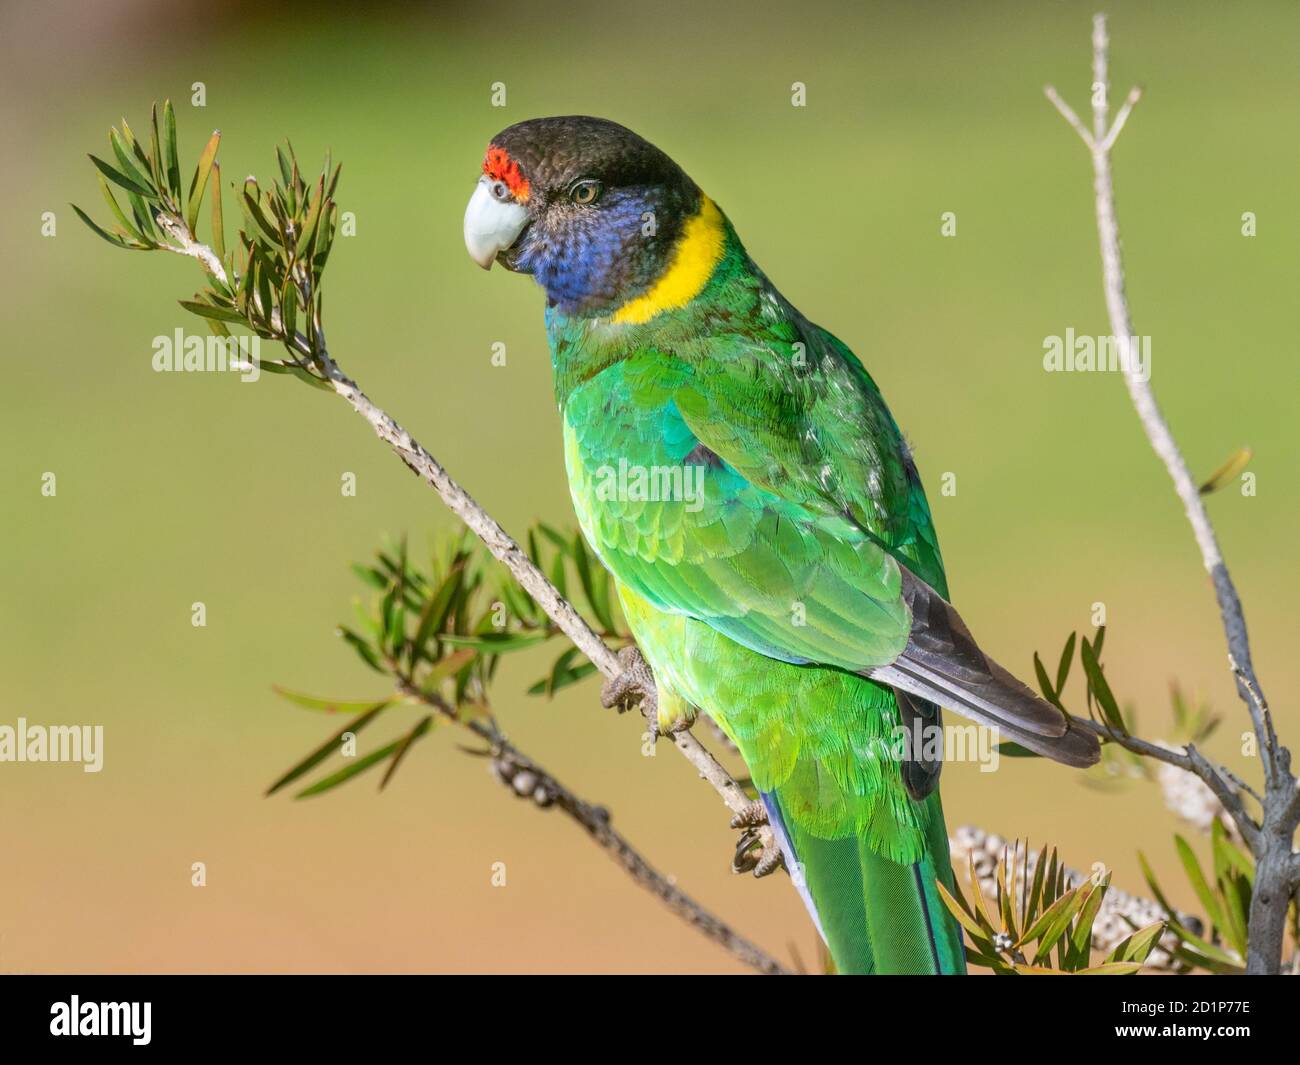 Un portrait d'un ringcou australien de la race occidentale, connu sous le nom de Parrot des vingt-huit, photographié dans une forêt du sud-ouest de l'Australie. Banque D'Images